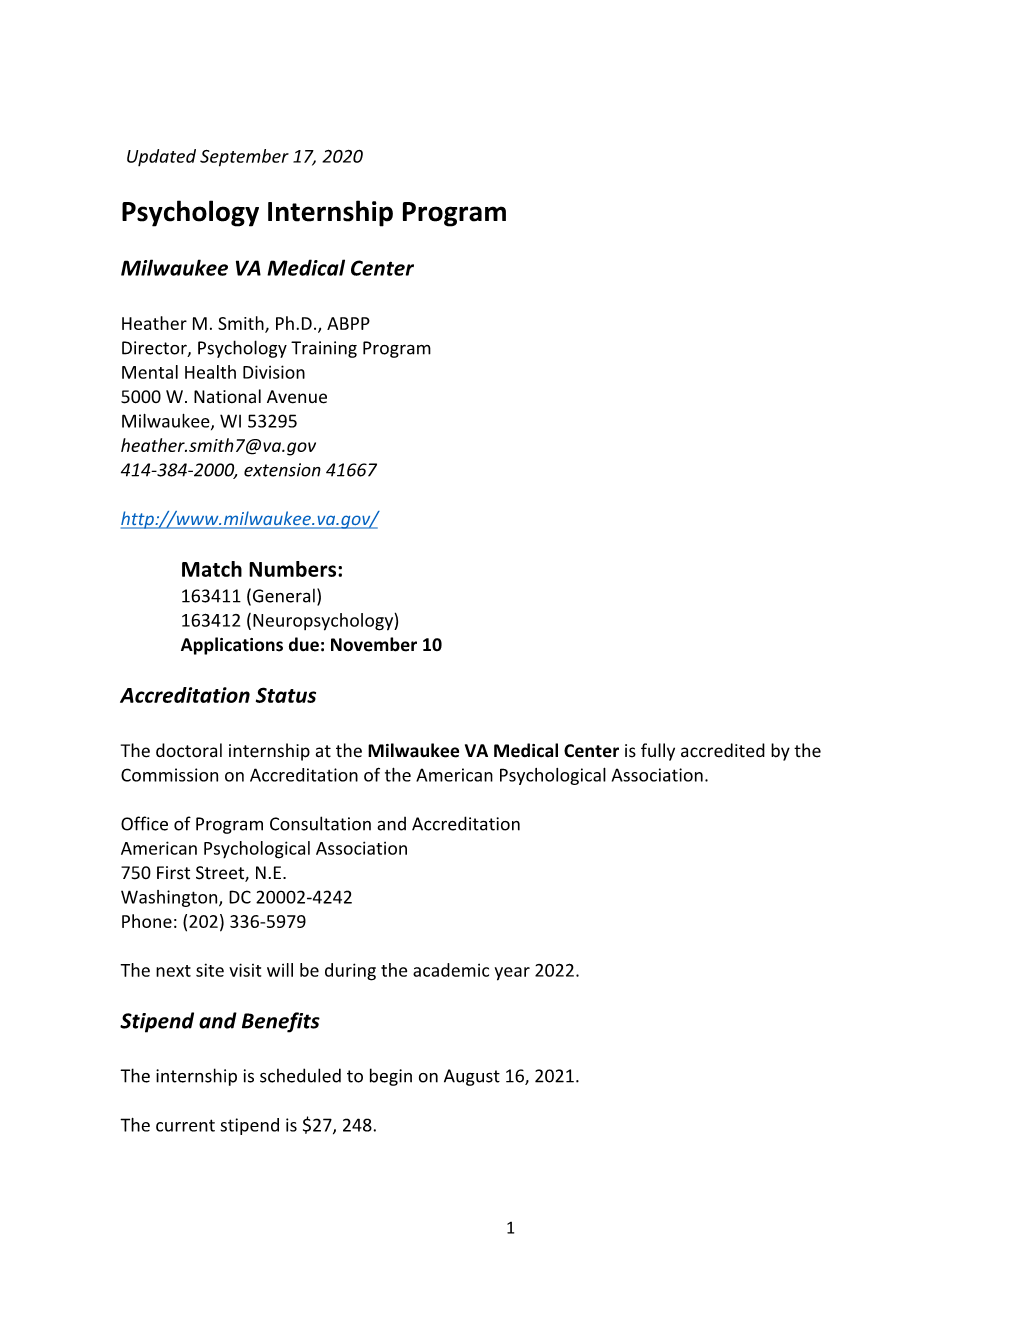 Psychology Internship Program